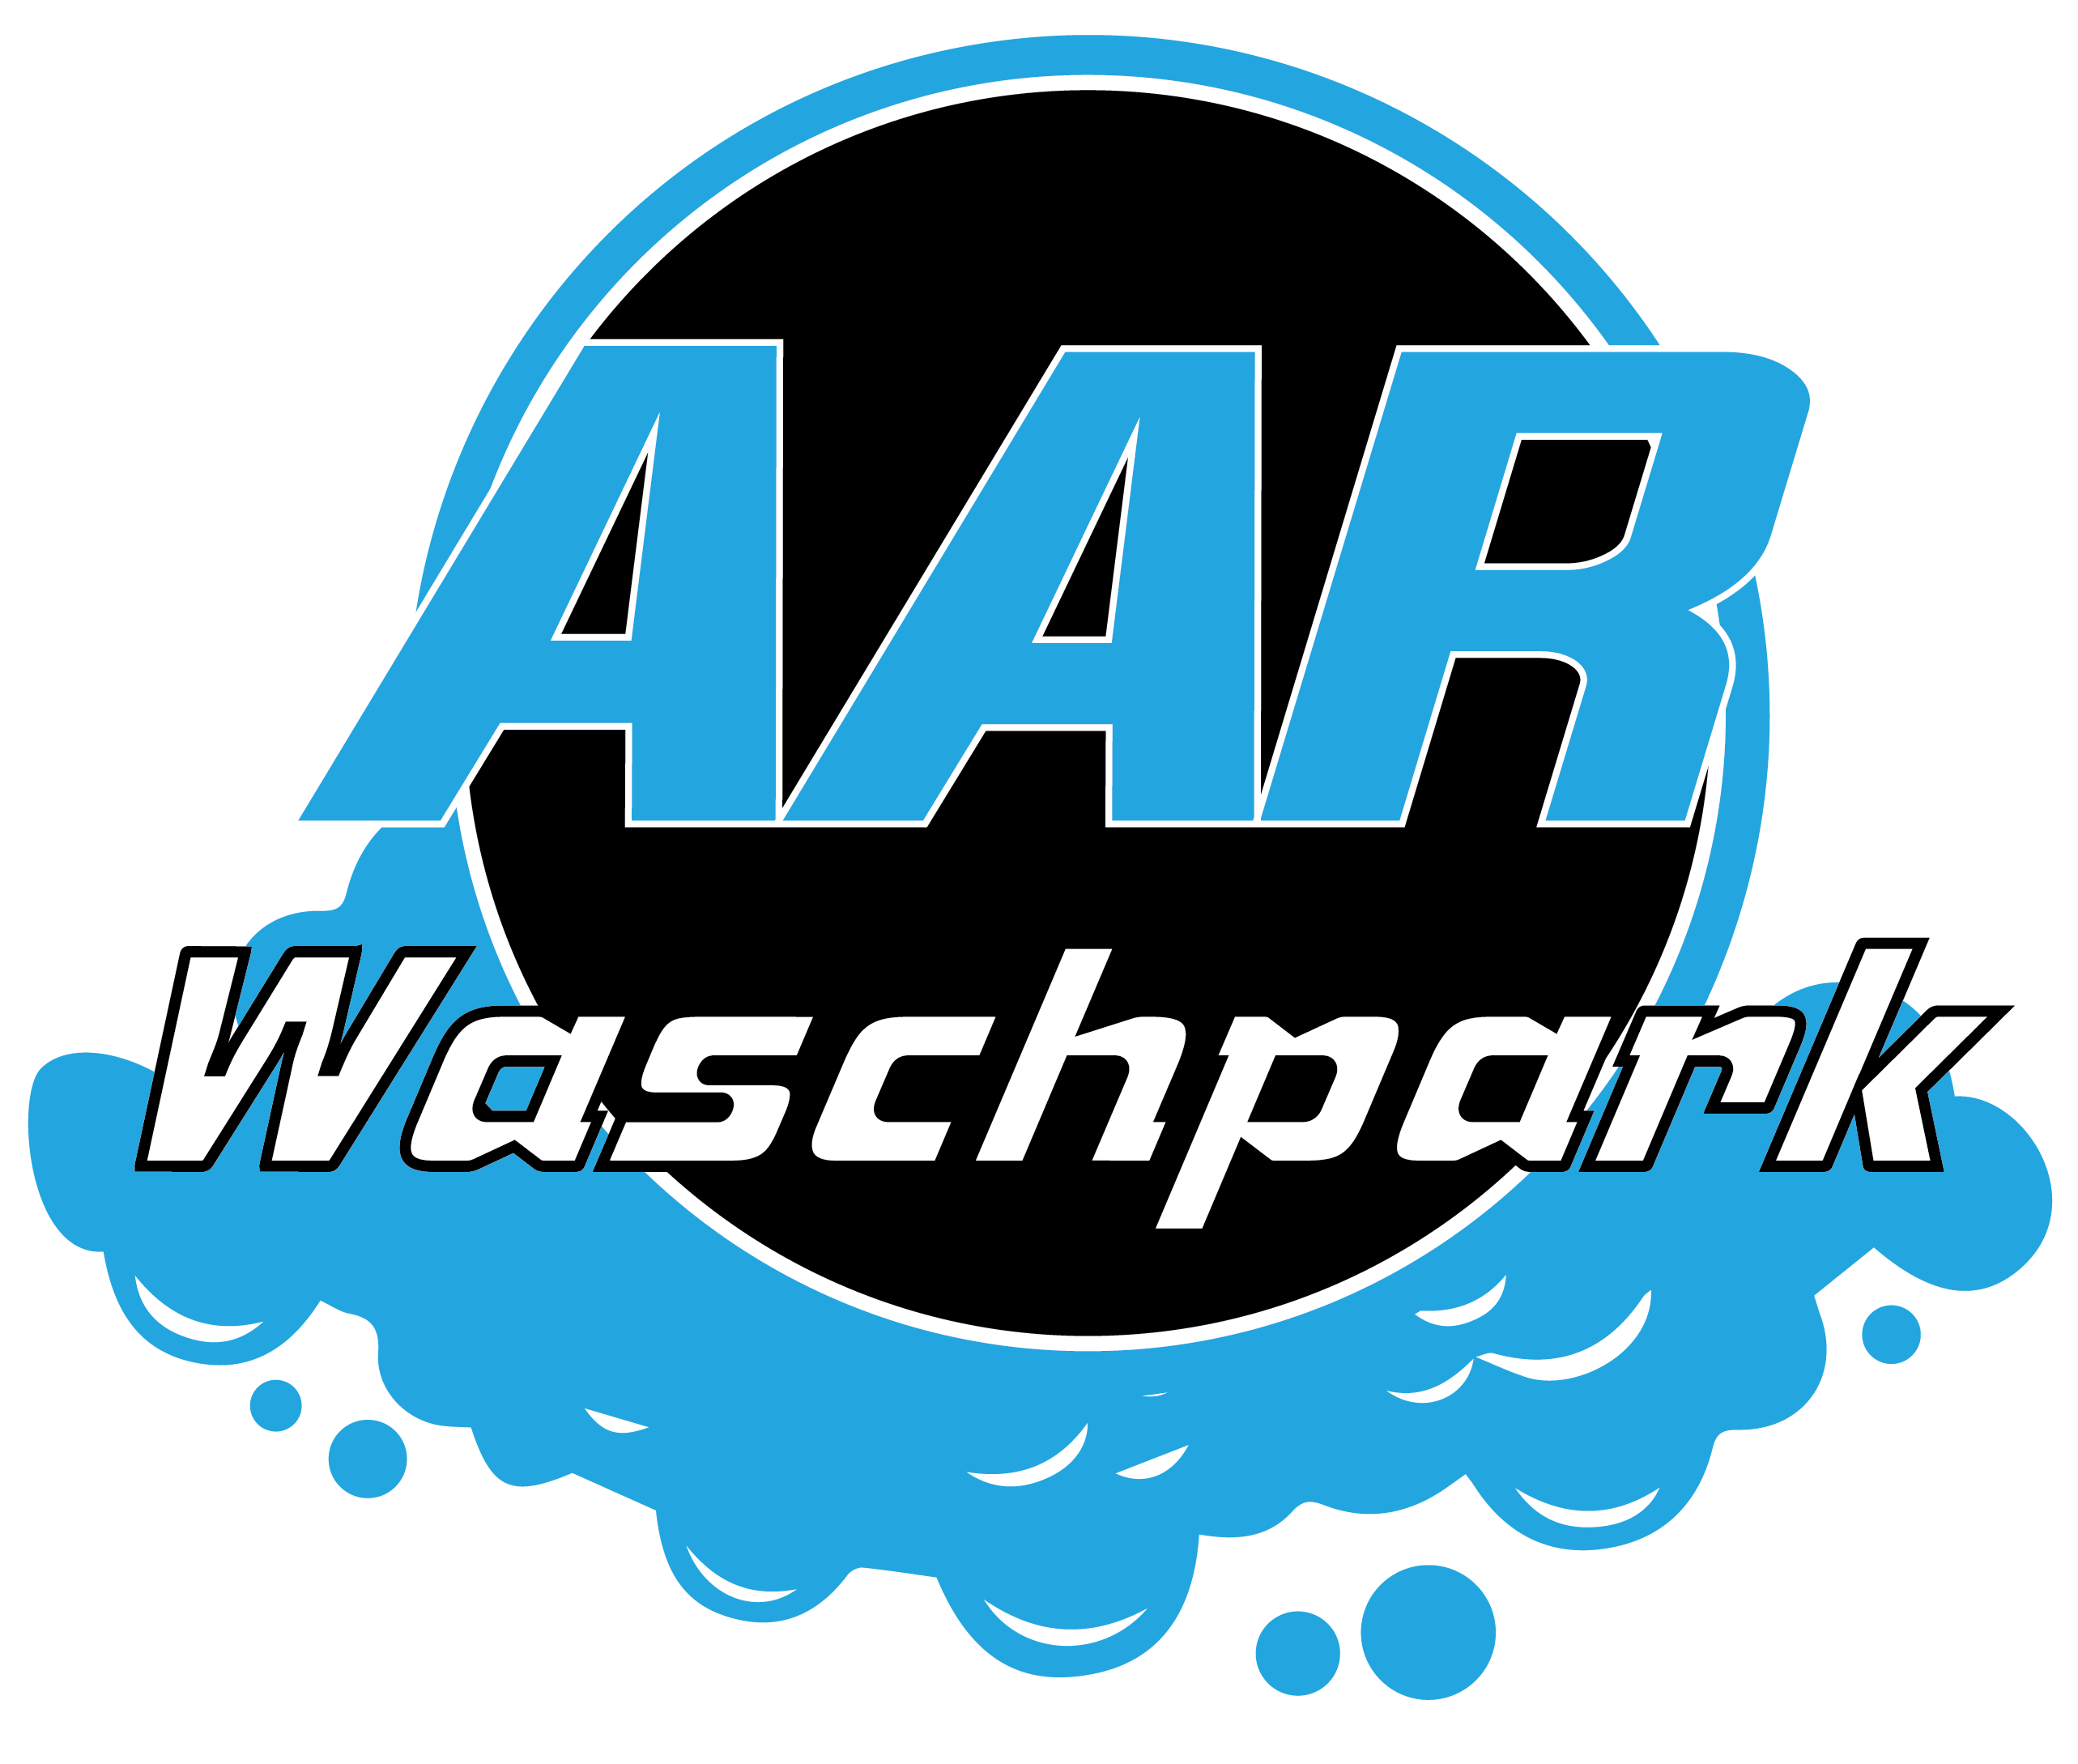 Aarwaschpark